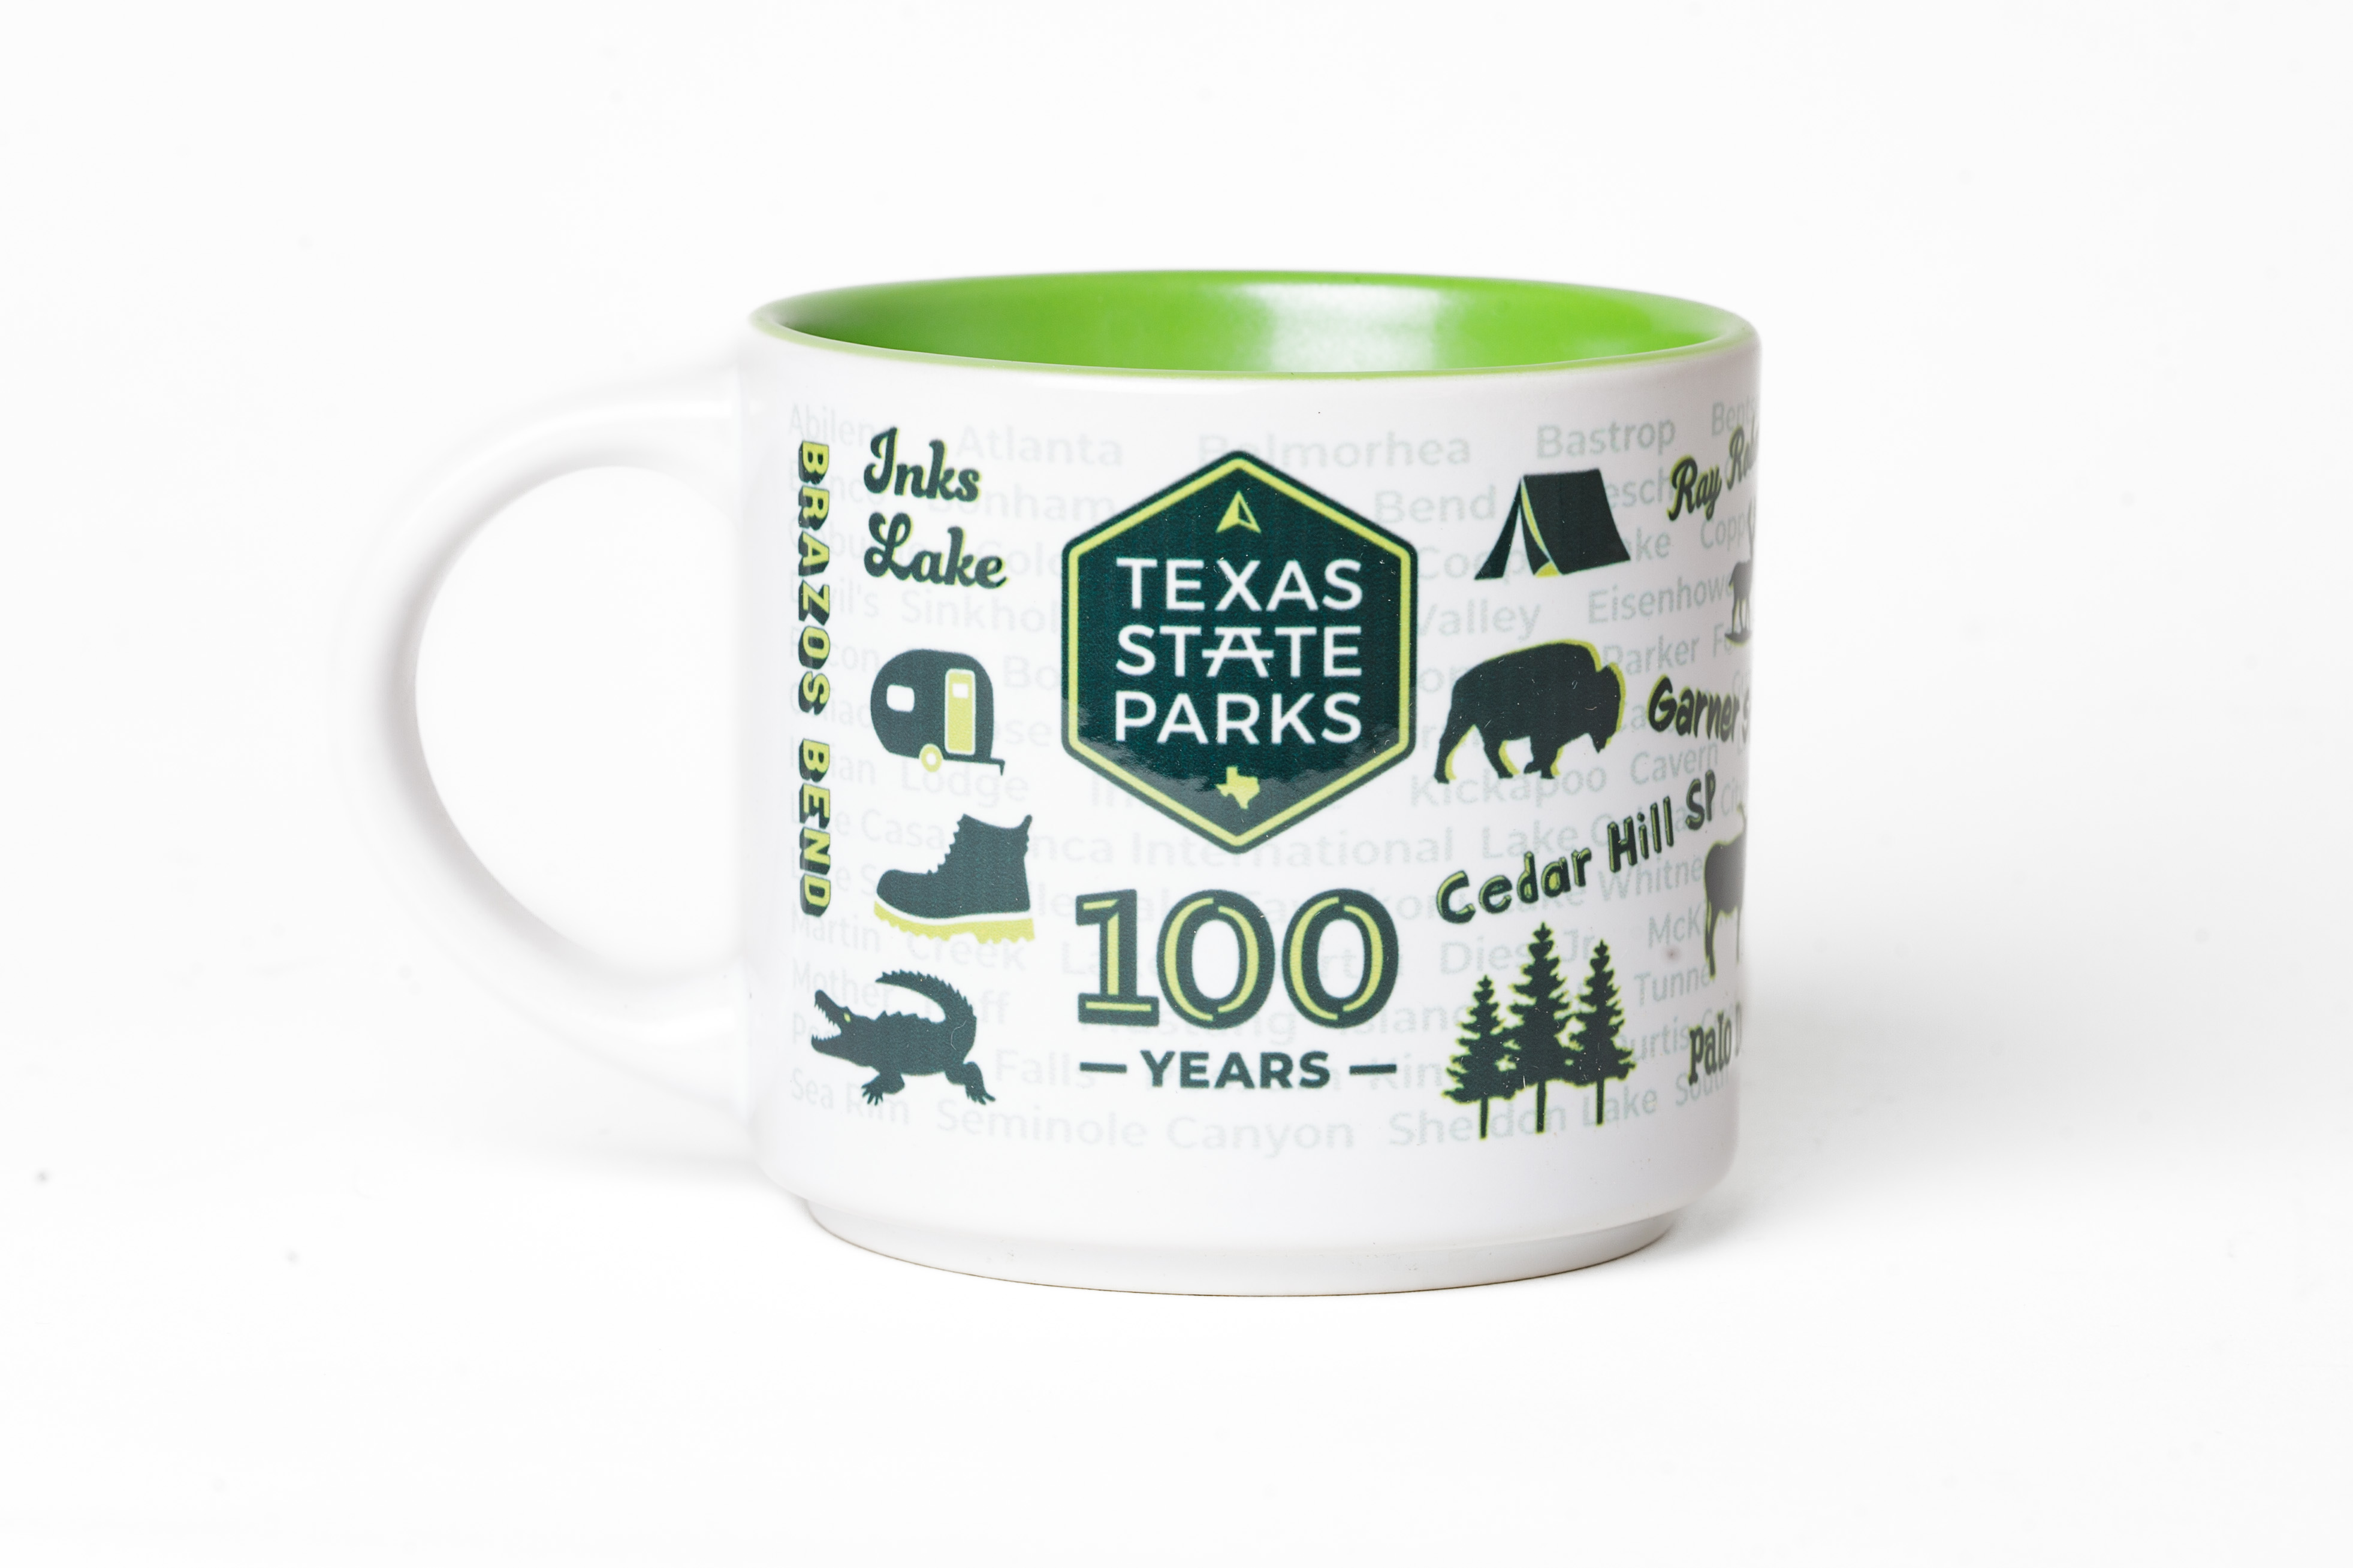 National Parks Iconic Enamel Mug